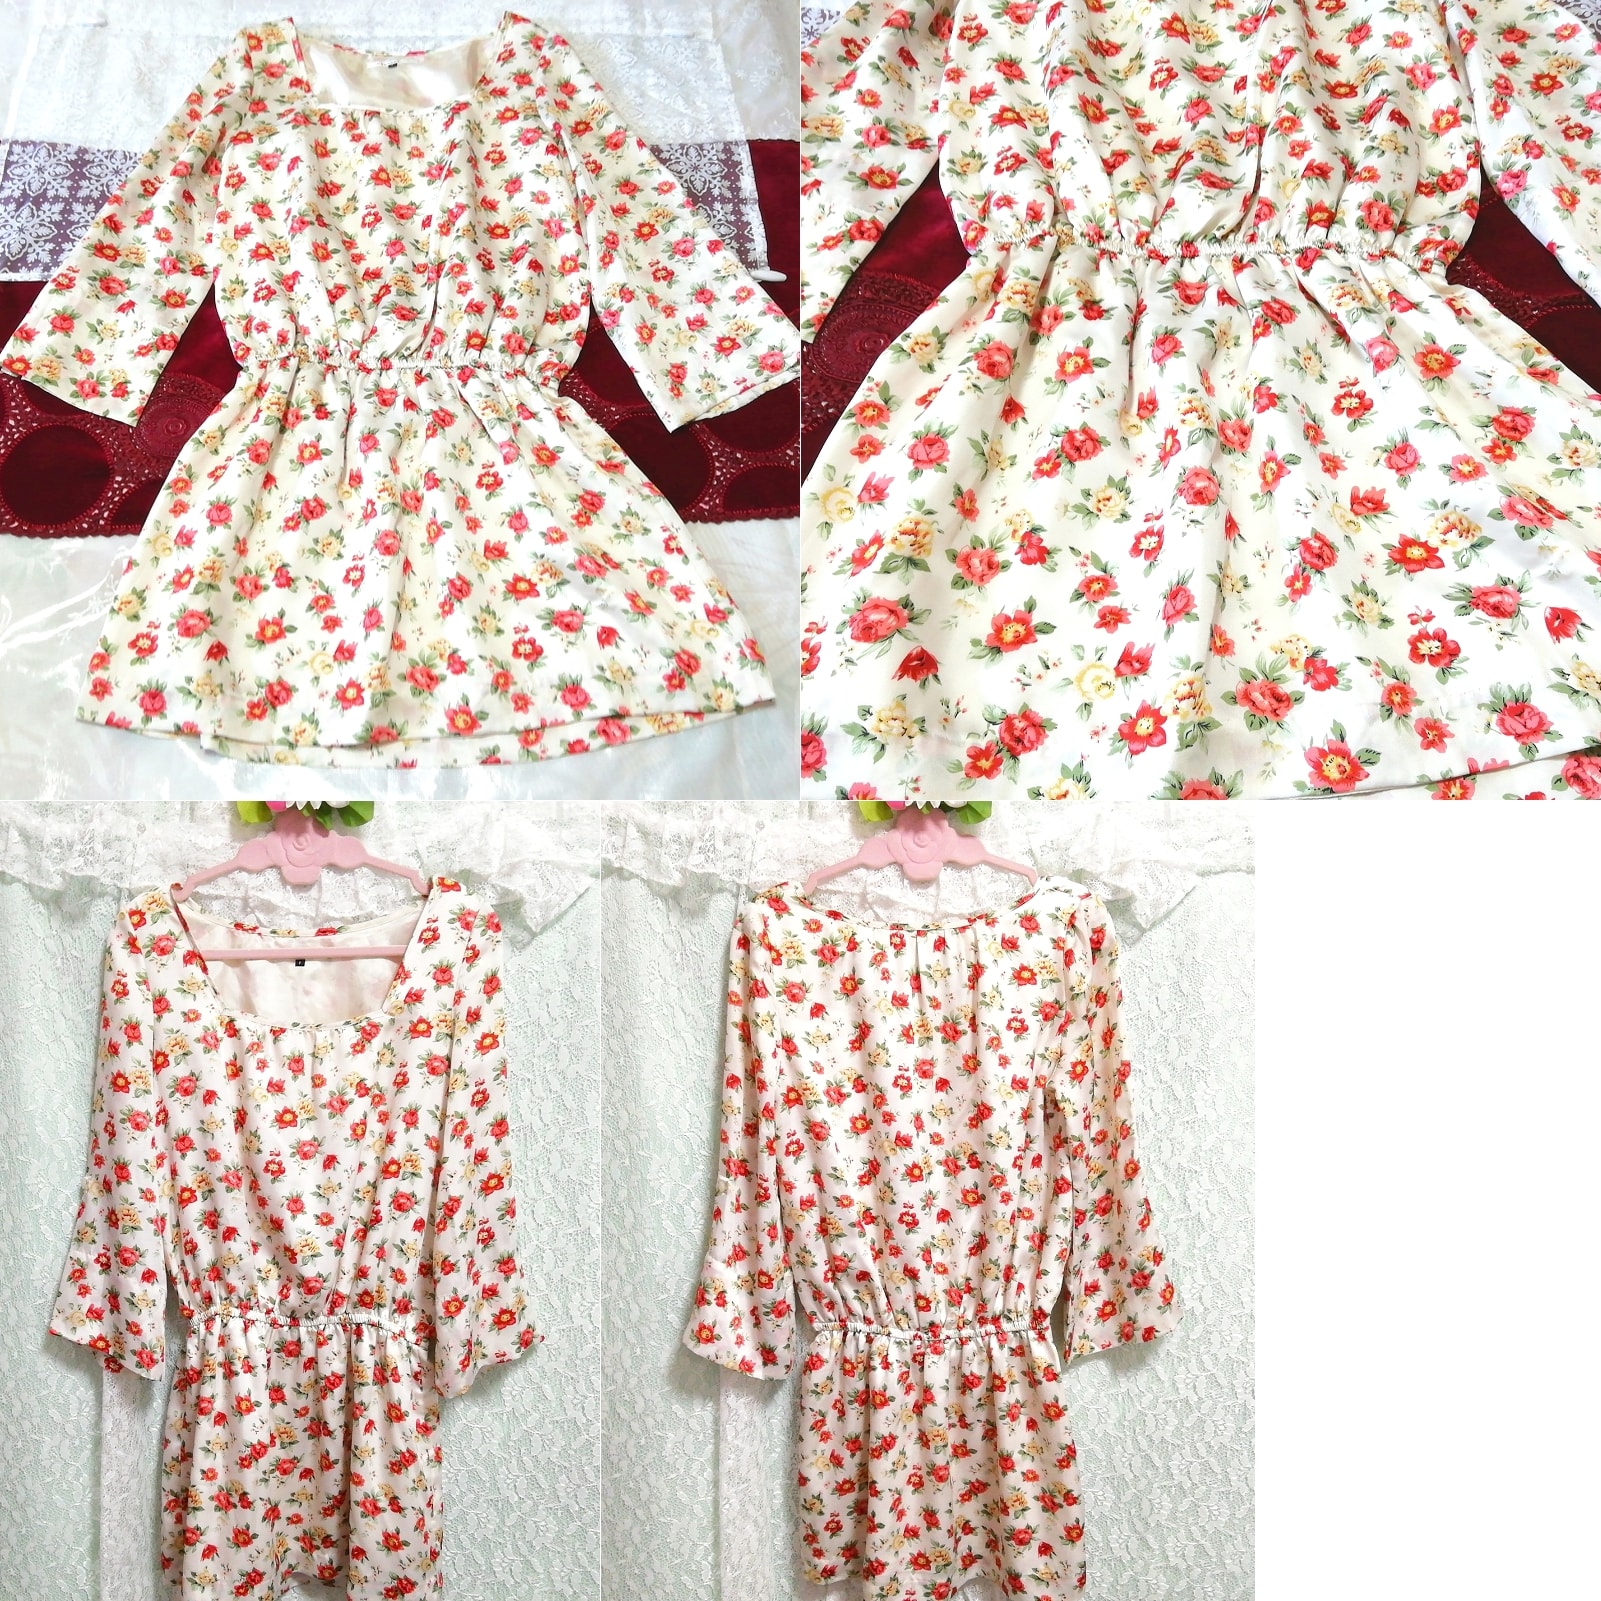 Geblümtes, weiß-rotes, langärmliges Tunika-Negligé-Nachthemd mit Blumenmuster, Tunika, lange Ärmel, Größe m